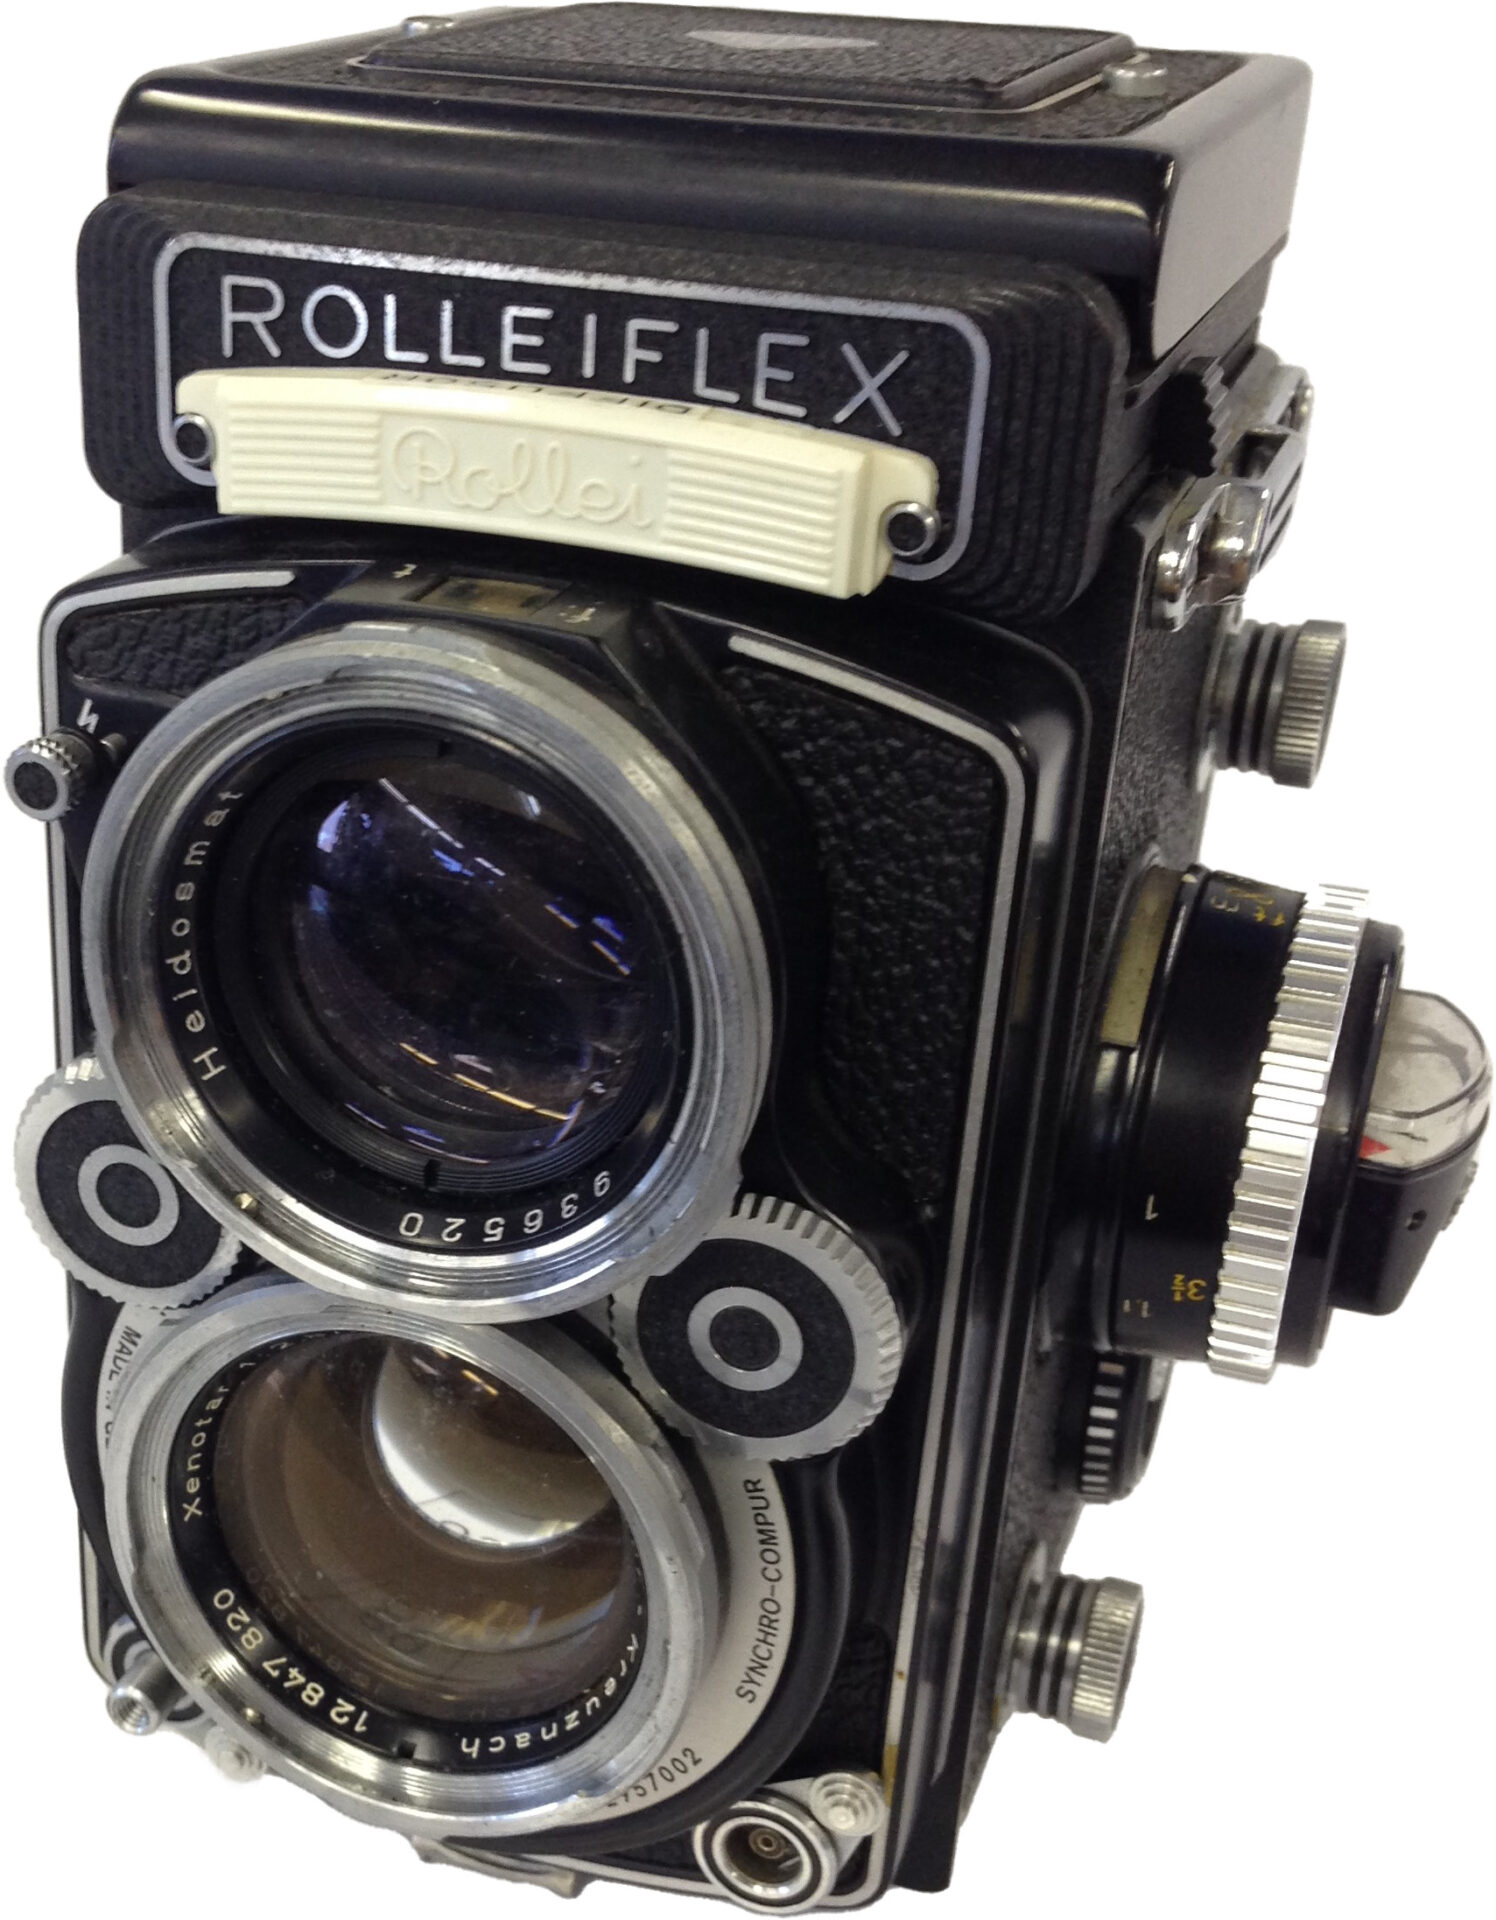 【ROLLEI:ROLLEIFLEX】のカメラ出張買取実績